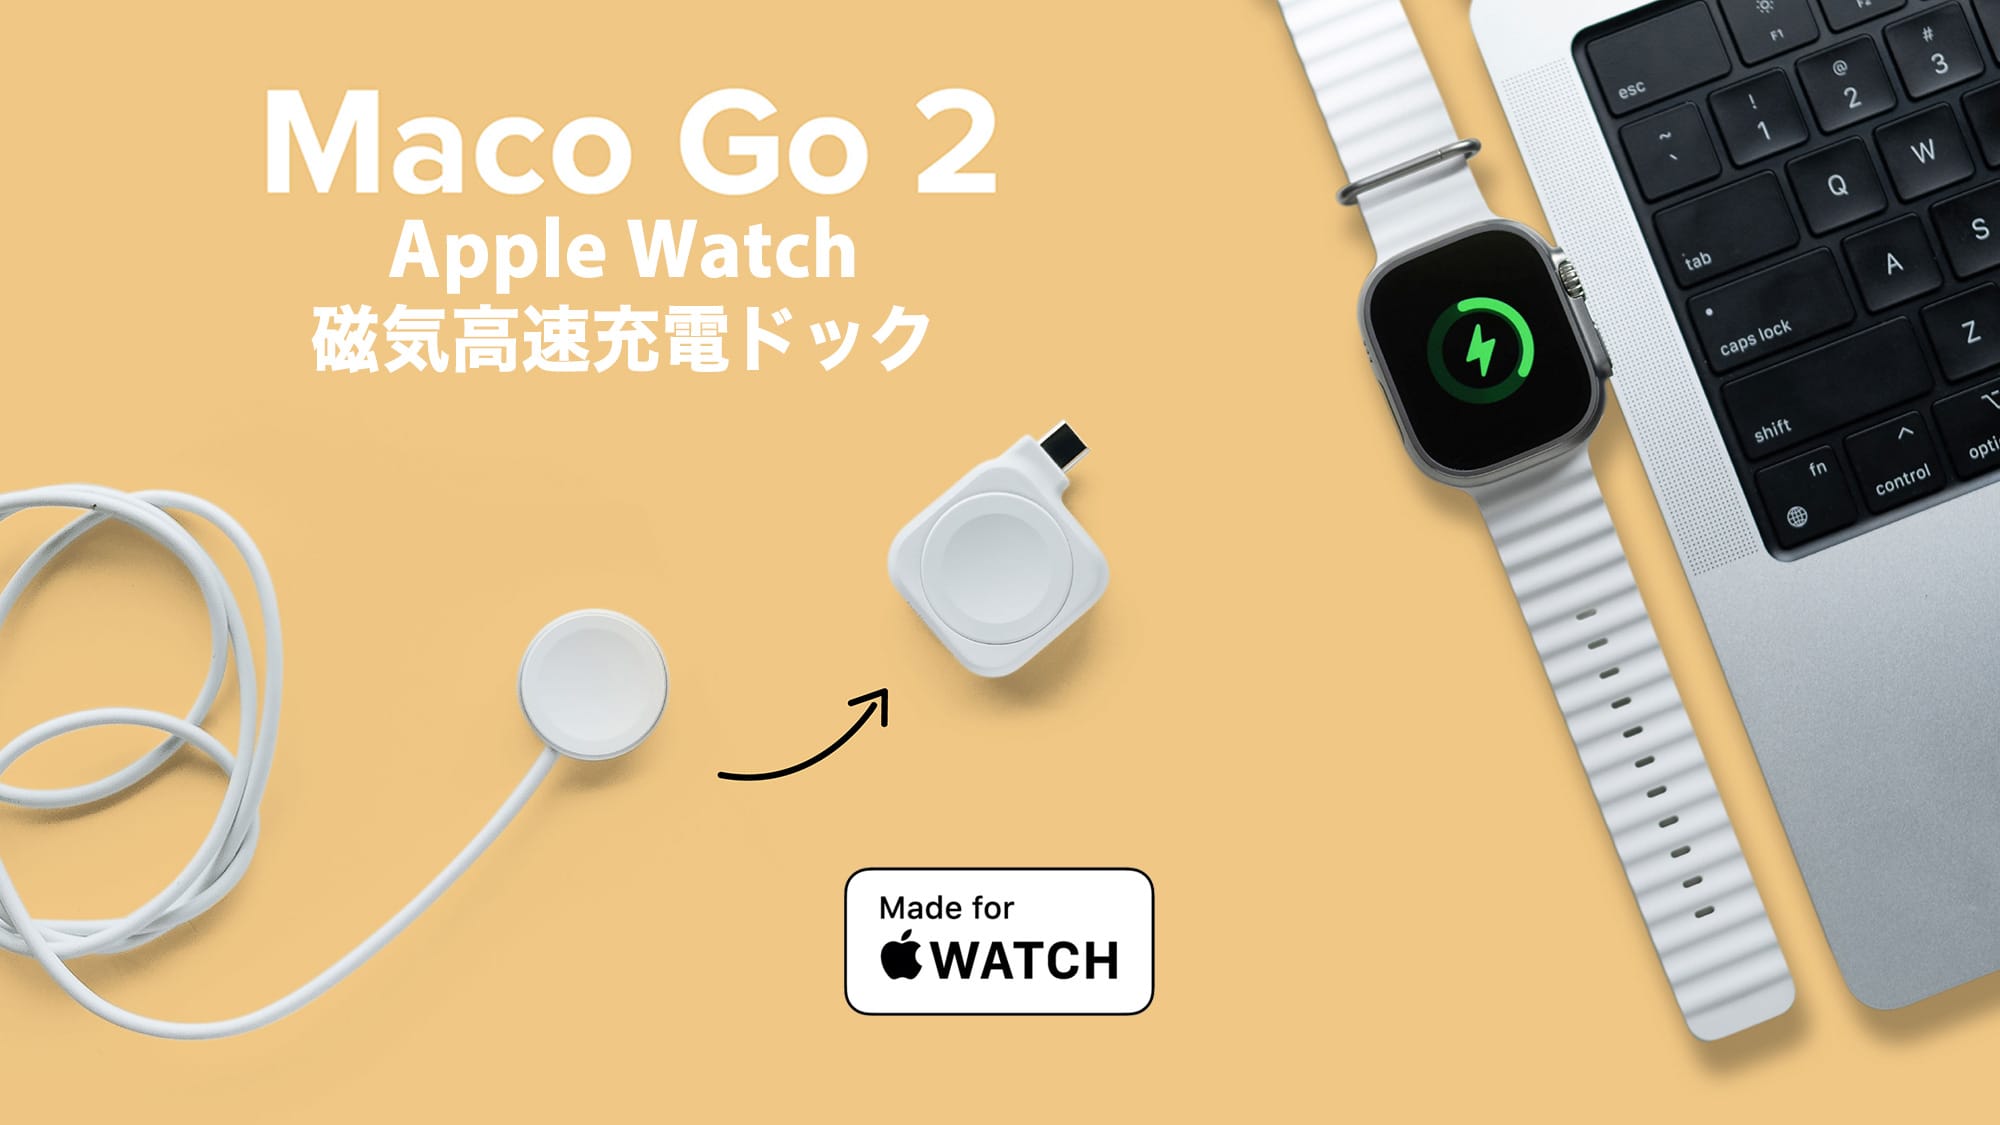 高速充電対応のApple Watch用磁気充電ドック「Maco Go 2」